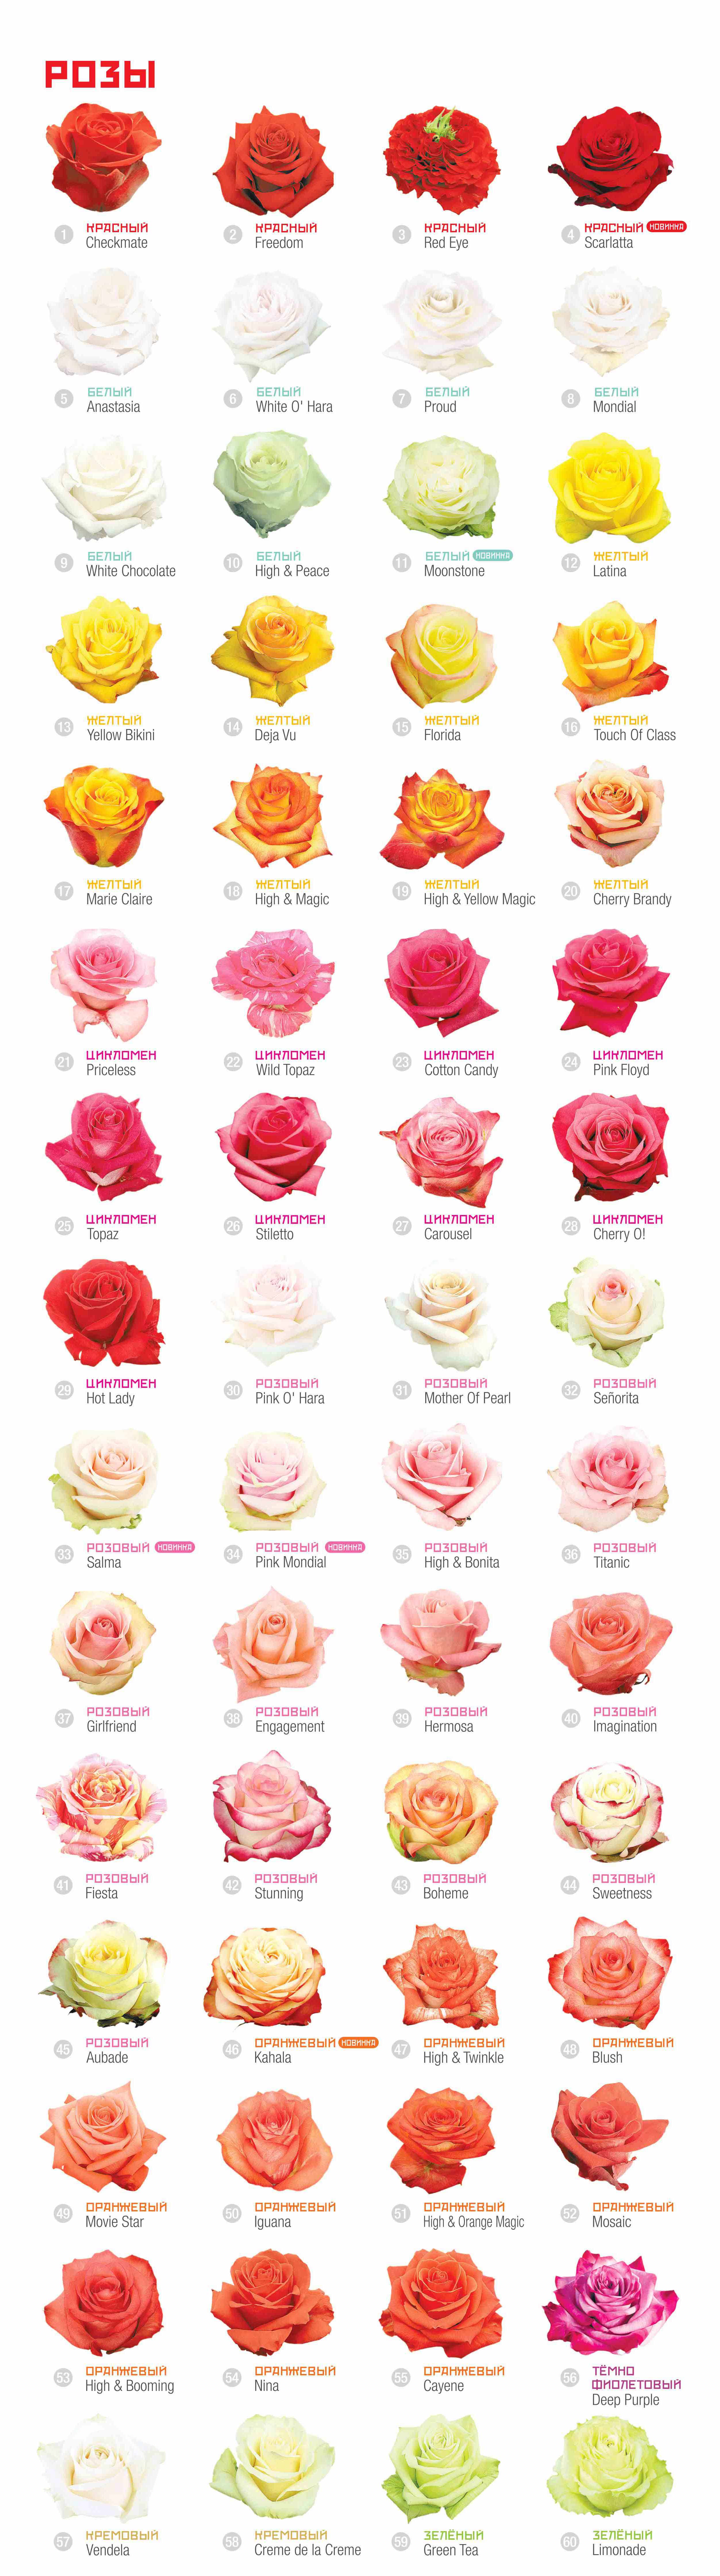 Сорта пудровых роз список сортов с фотографиями и отзывами 2021 | RoseMarketru